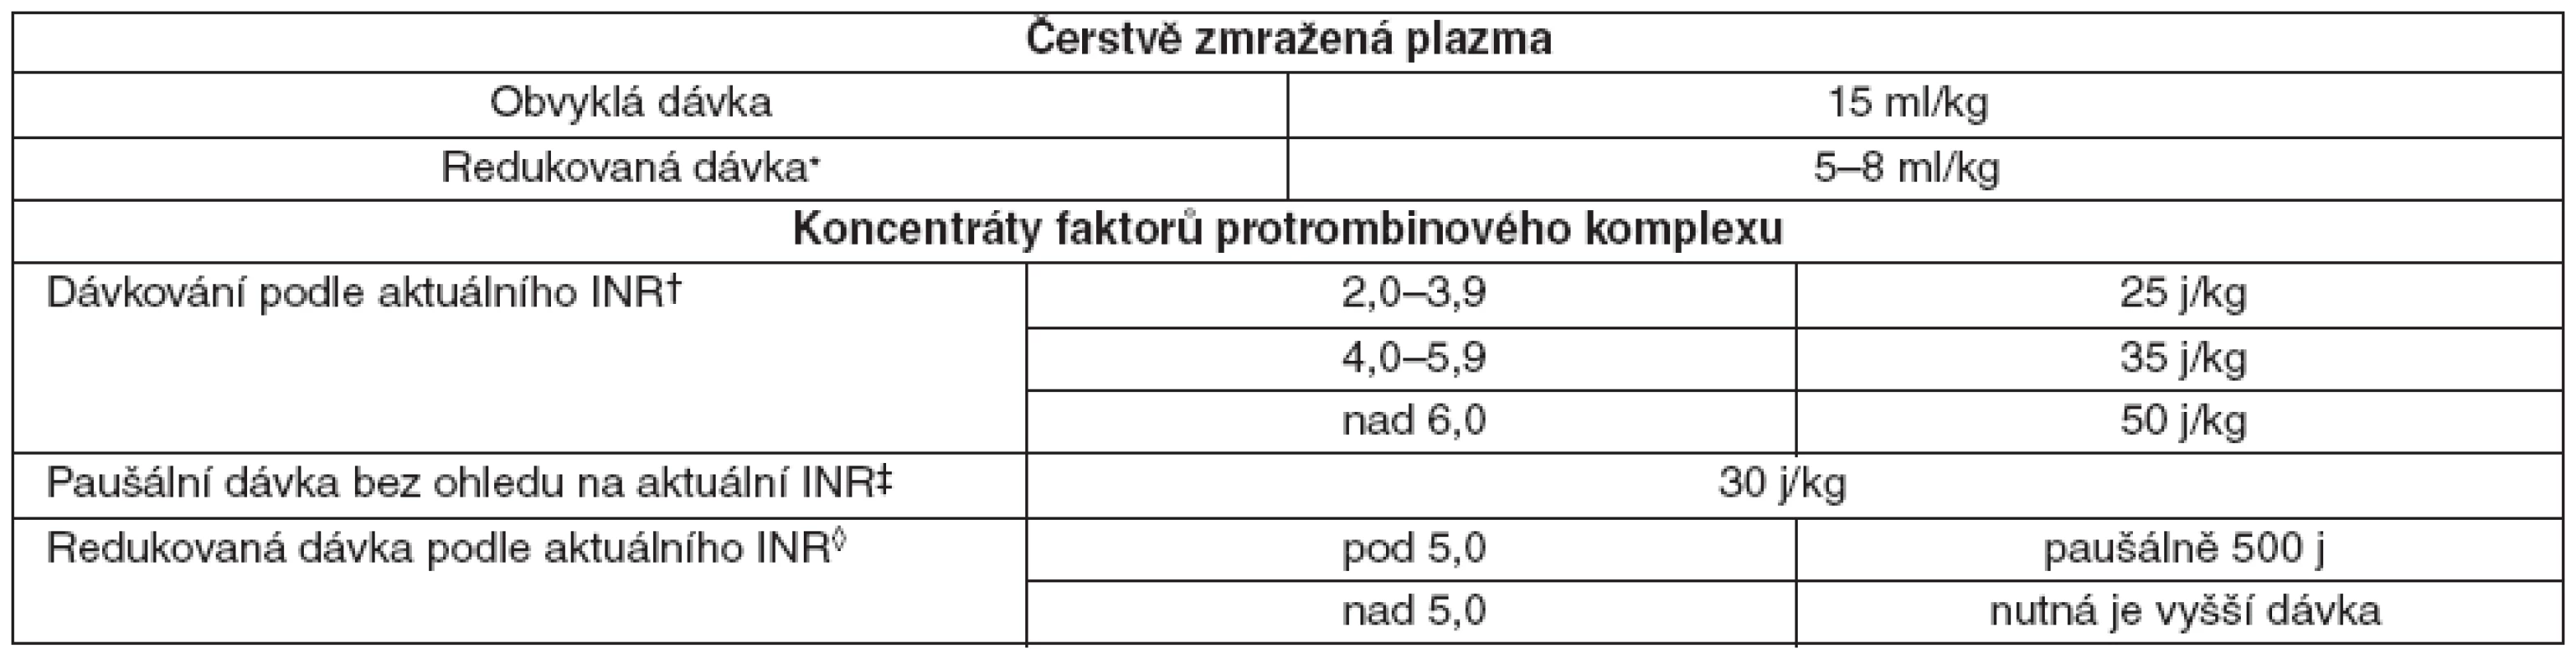 Dávkování plazmy a koncentrátu faktorů protrombinového komplexu u pacientů léčených warfarinem